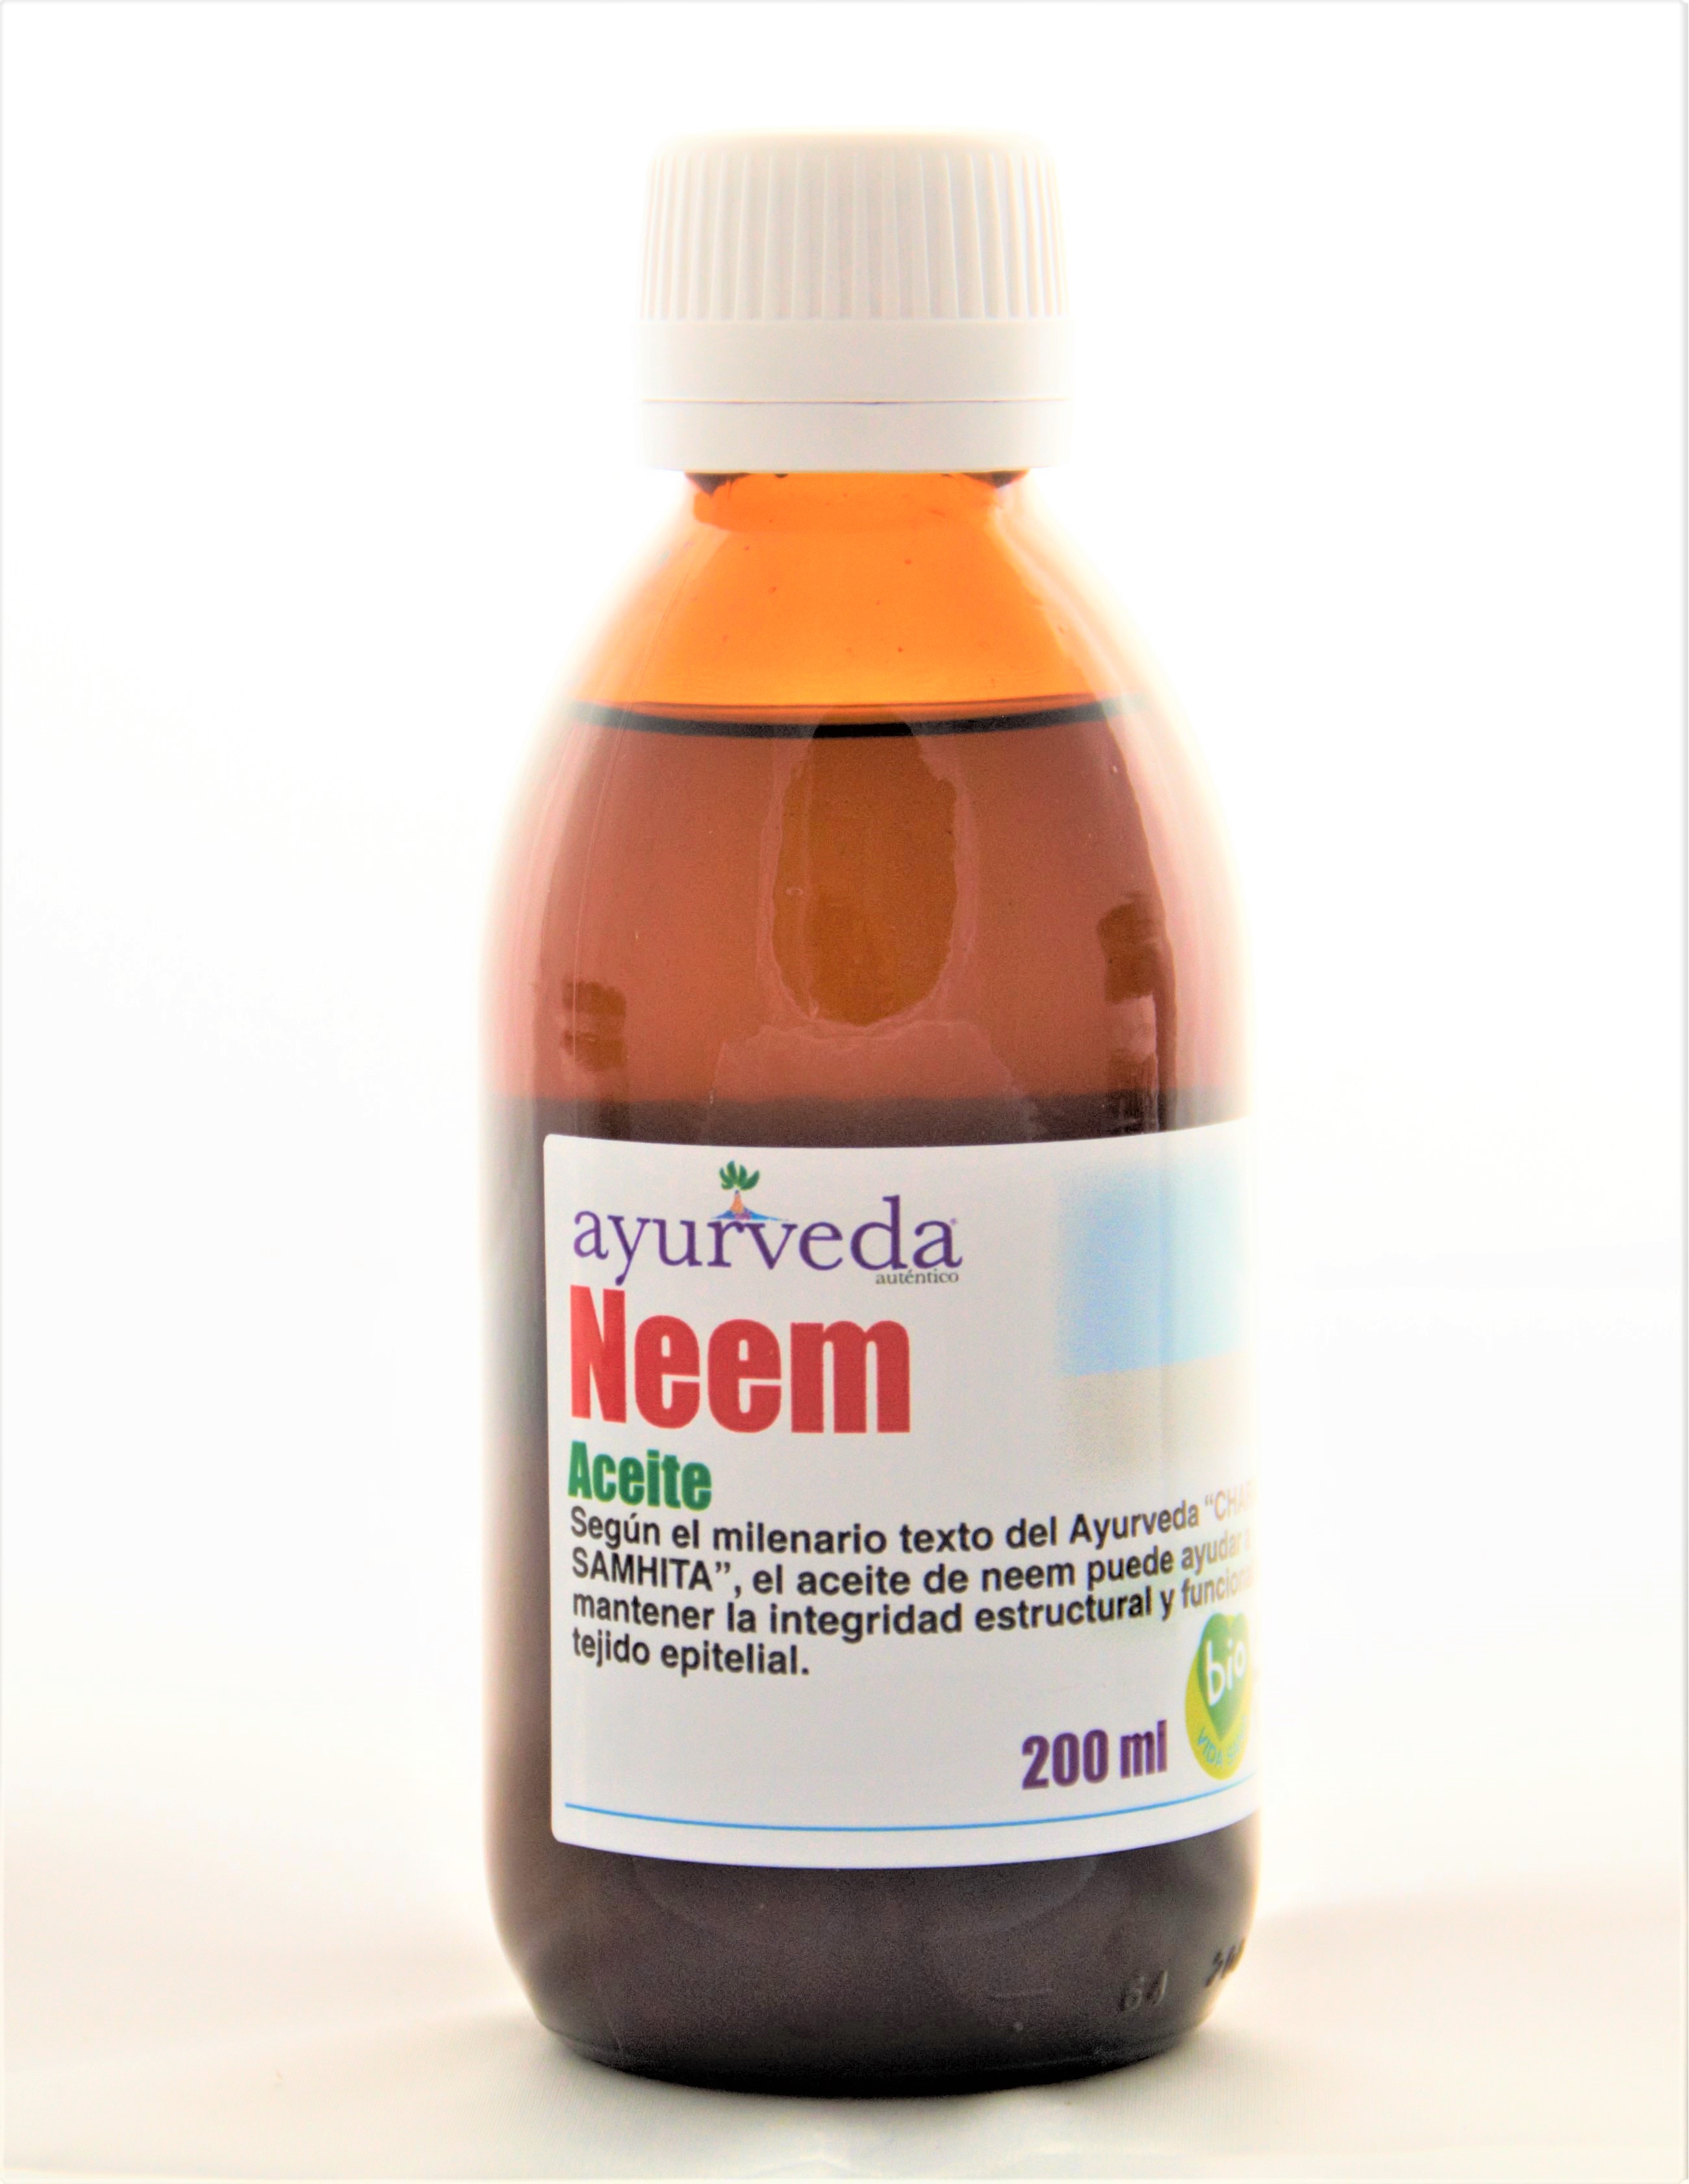 Aceite de neem: Que es y cuales son sus propiedades